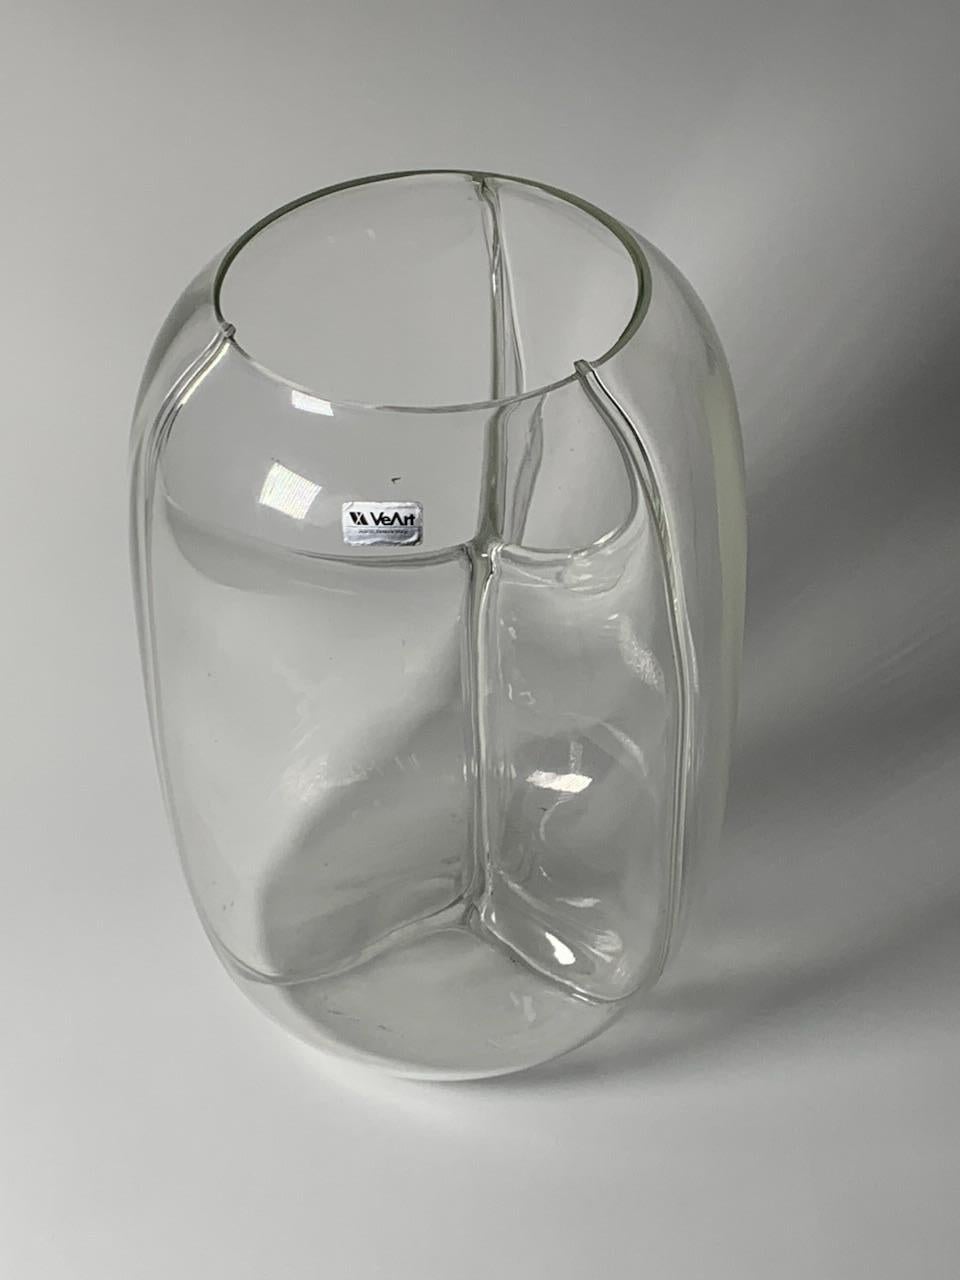 Vase en verre de Murano conçu par Toni Zuccheri et produit par VeArt en 1985. Avec le Label d'origine.

Biographie
La passion du verrier italien et maître artisan de Murano Toni Zuccheri pour la nature et les animaux a contribué à l'élaboration de